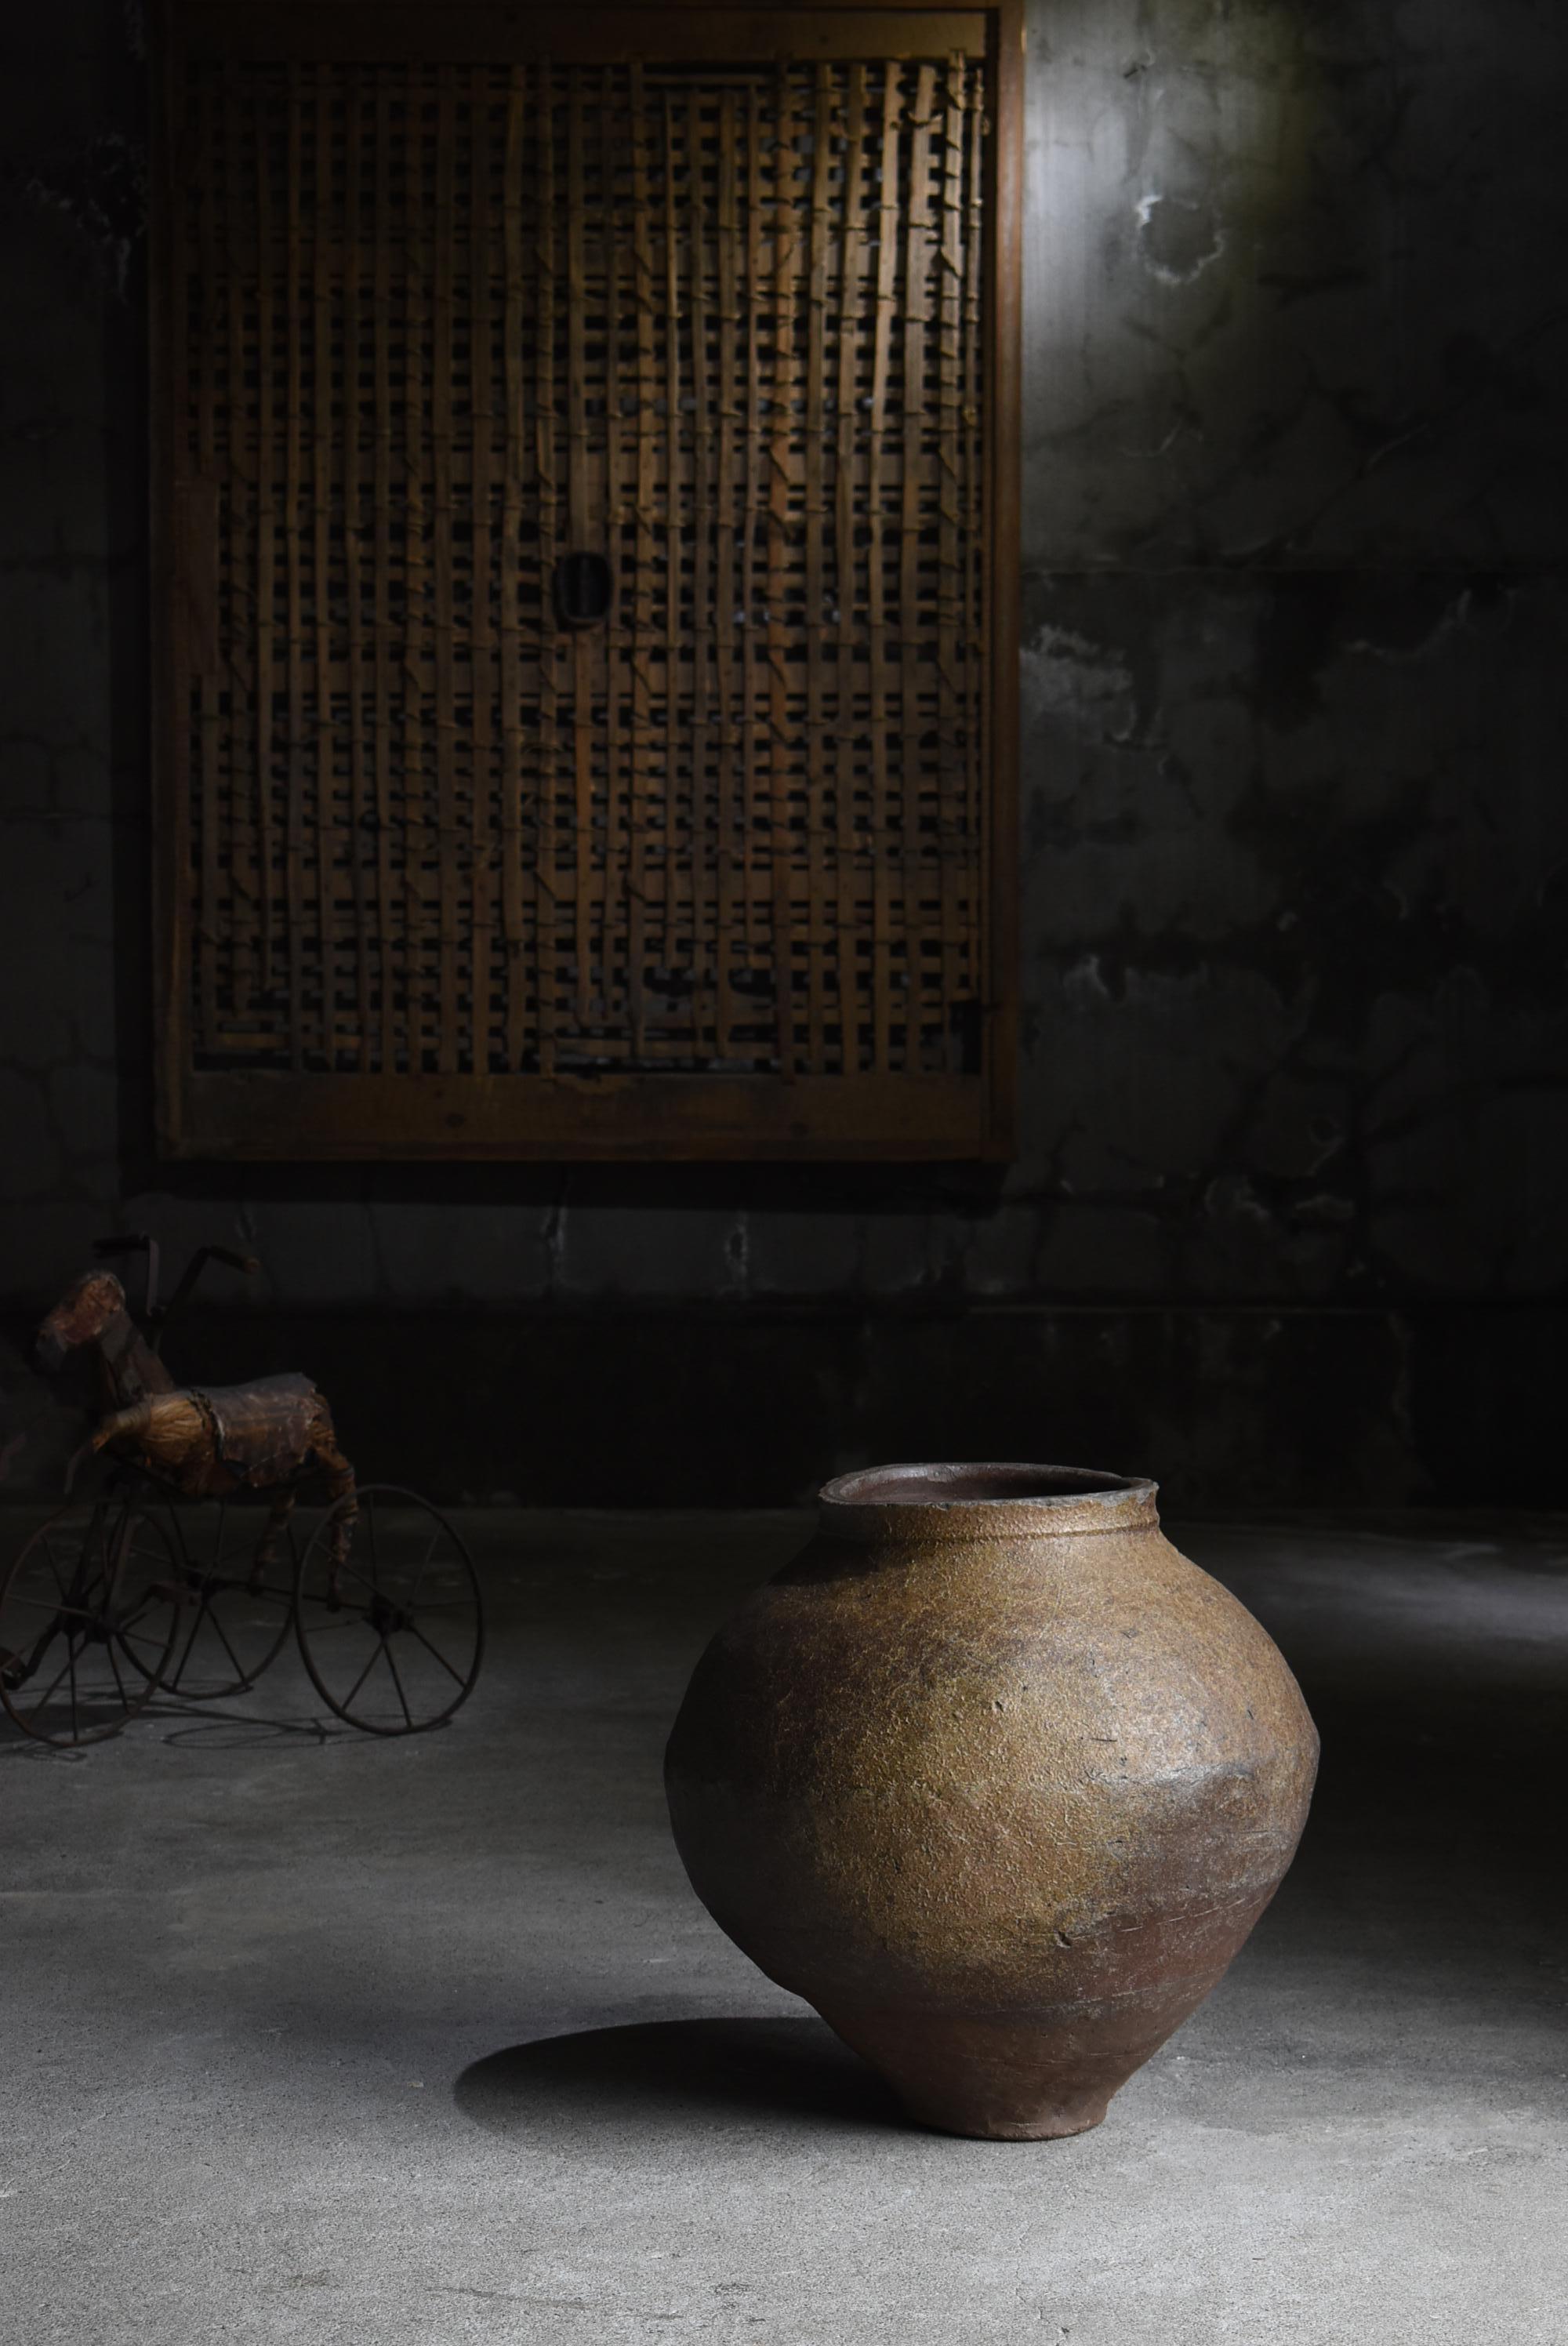 Dies ist eine sehr alte und große japanische Töpferei.
Es wird Tokoname-yaki genannt.
Diese Keramik wurde vom 14. bis 16. Jahrhundert hergestellt.

Die verzerrte Form ist sehr einzigartig.
Es ist aus jedem Blickwinkel sehr schön.

Sie ist stabil und